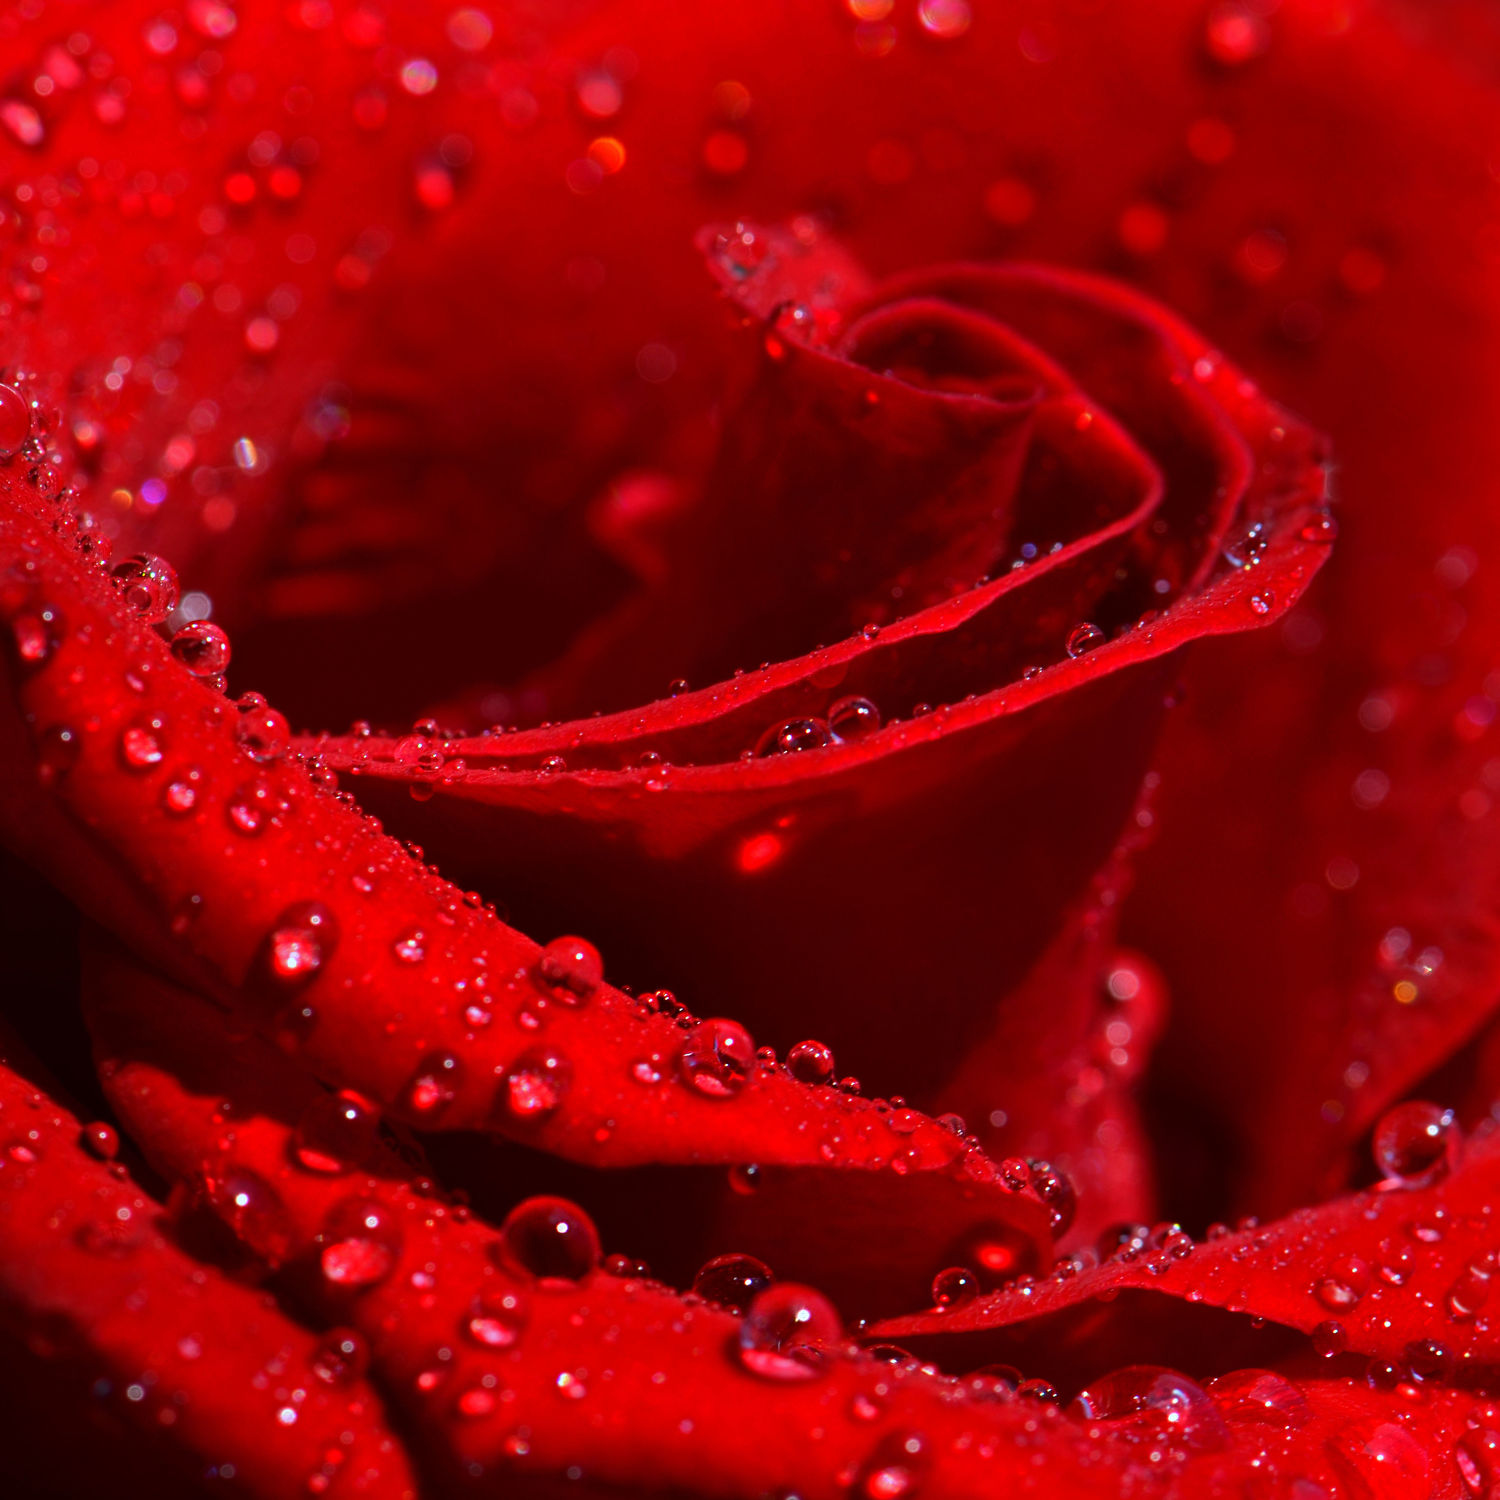 Bild mit Blumen, Rosen, Blume, Rose, rote Rose, rote Rosen, Wassertropfen, Regentropfen, Tropfen, Blüten, blüte, Tautropfen